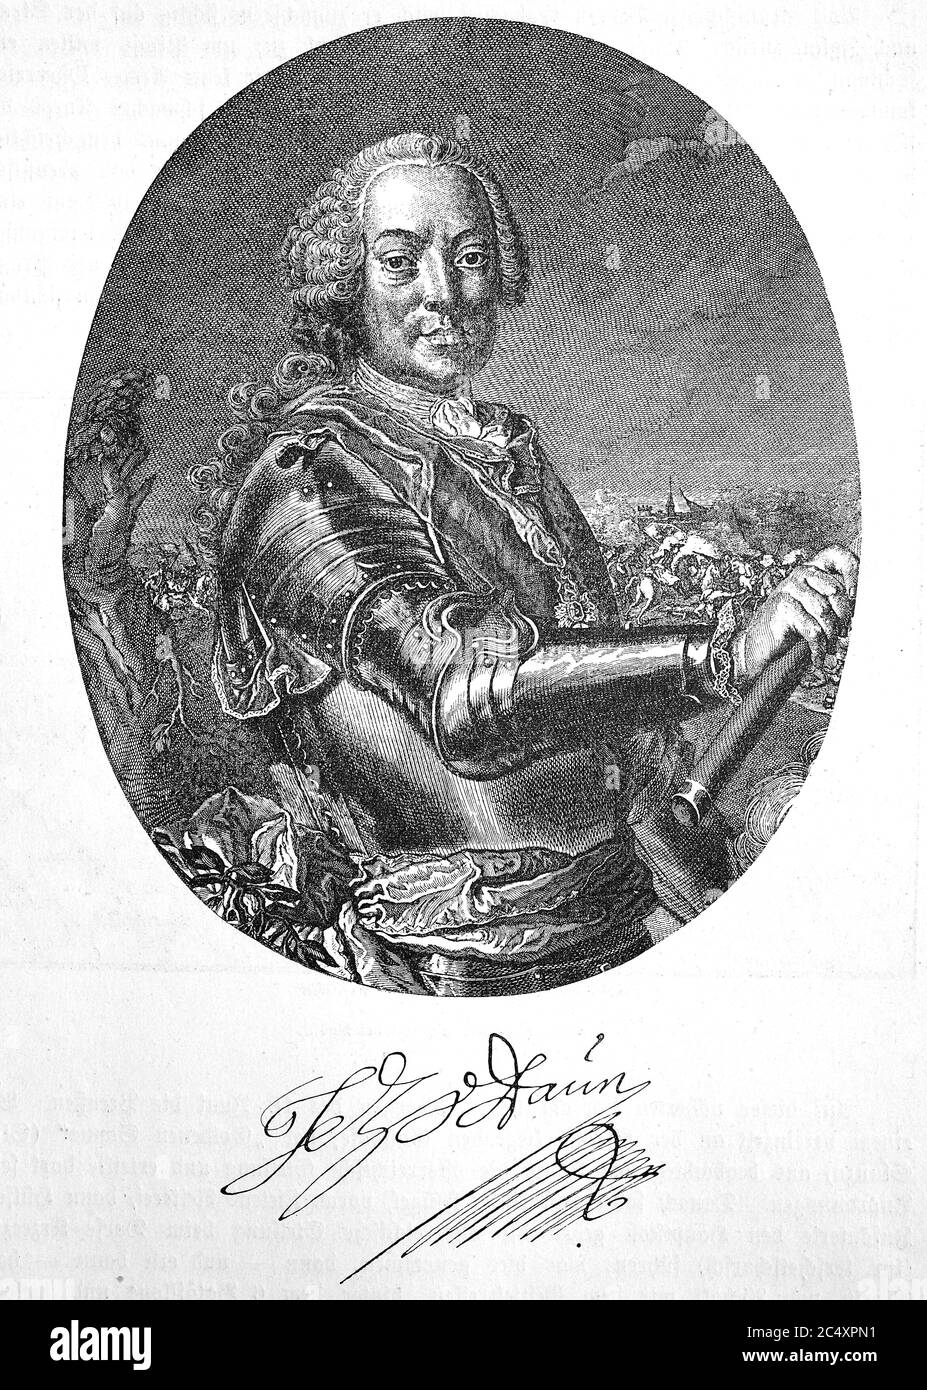 Leopoldo Giuseppe Graf di Daun, principe di Teano (* 24 settembre 1705; † 5 febbraio 1766) è stato un . 24 Settembre 1705; † 5. Febbraio 1766) war ein kaiserlicher und oesterreichischer Feldmarschall und Feldherr im Siebenjaehrigen Krieg' Foto Stock